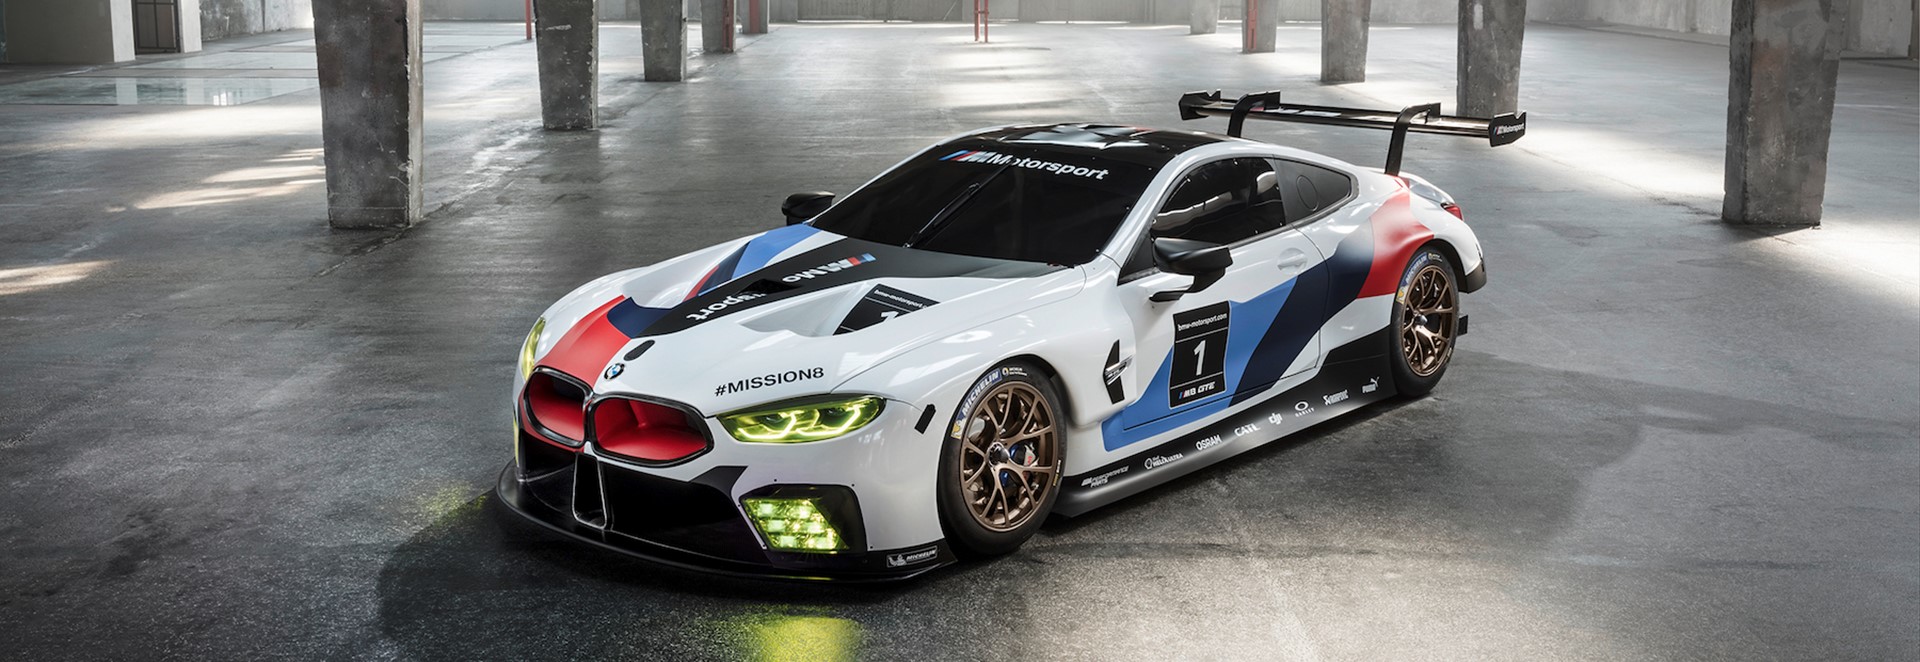 BMW unveils bonkers M8 GTE racer - Car Keys